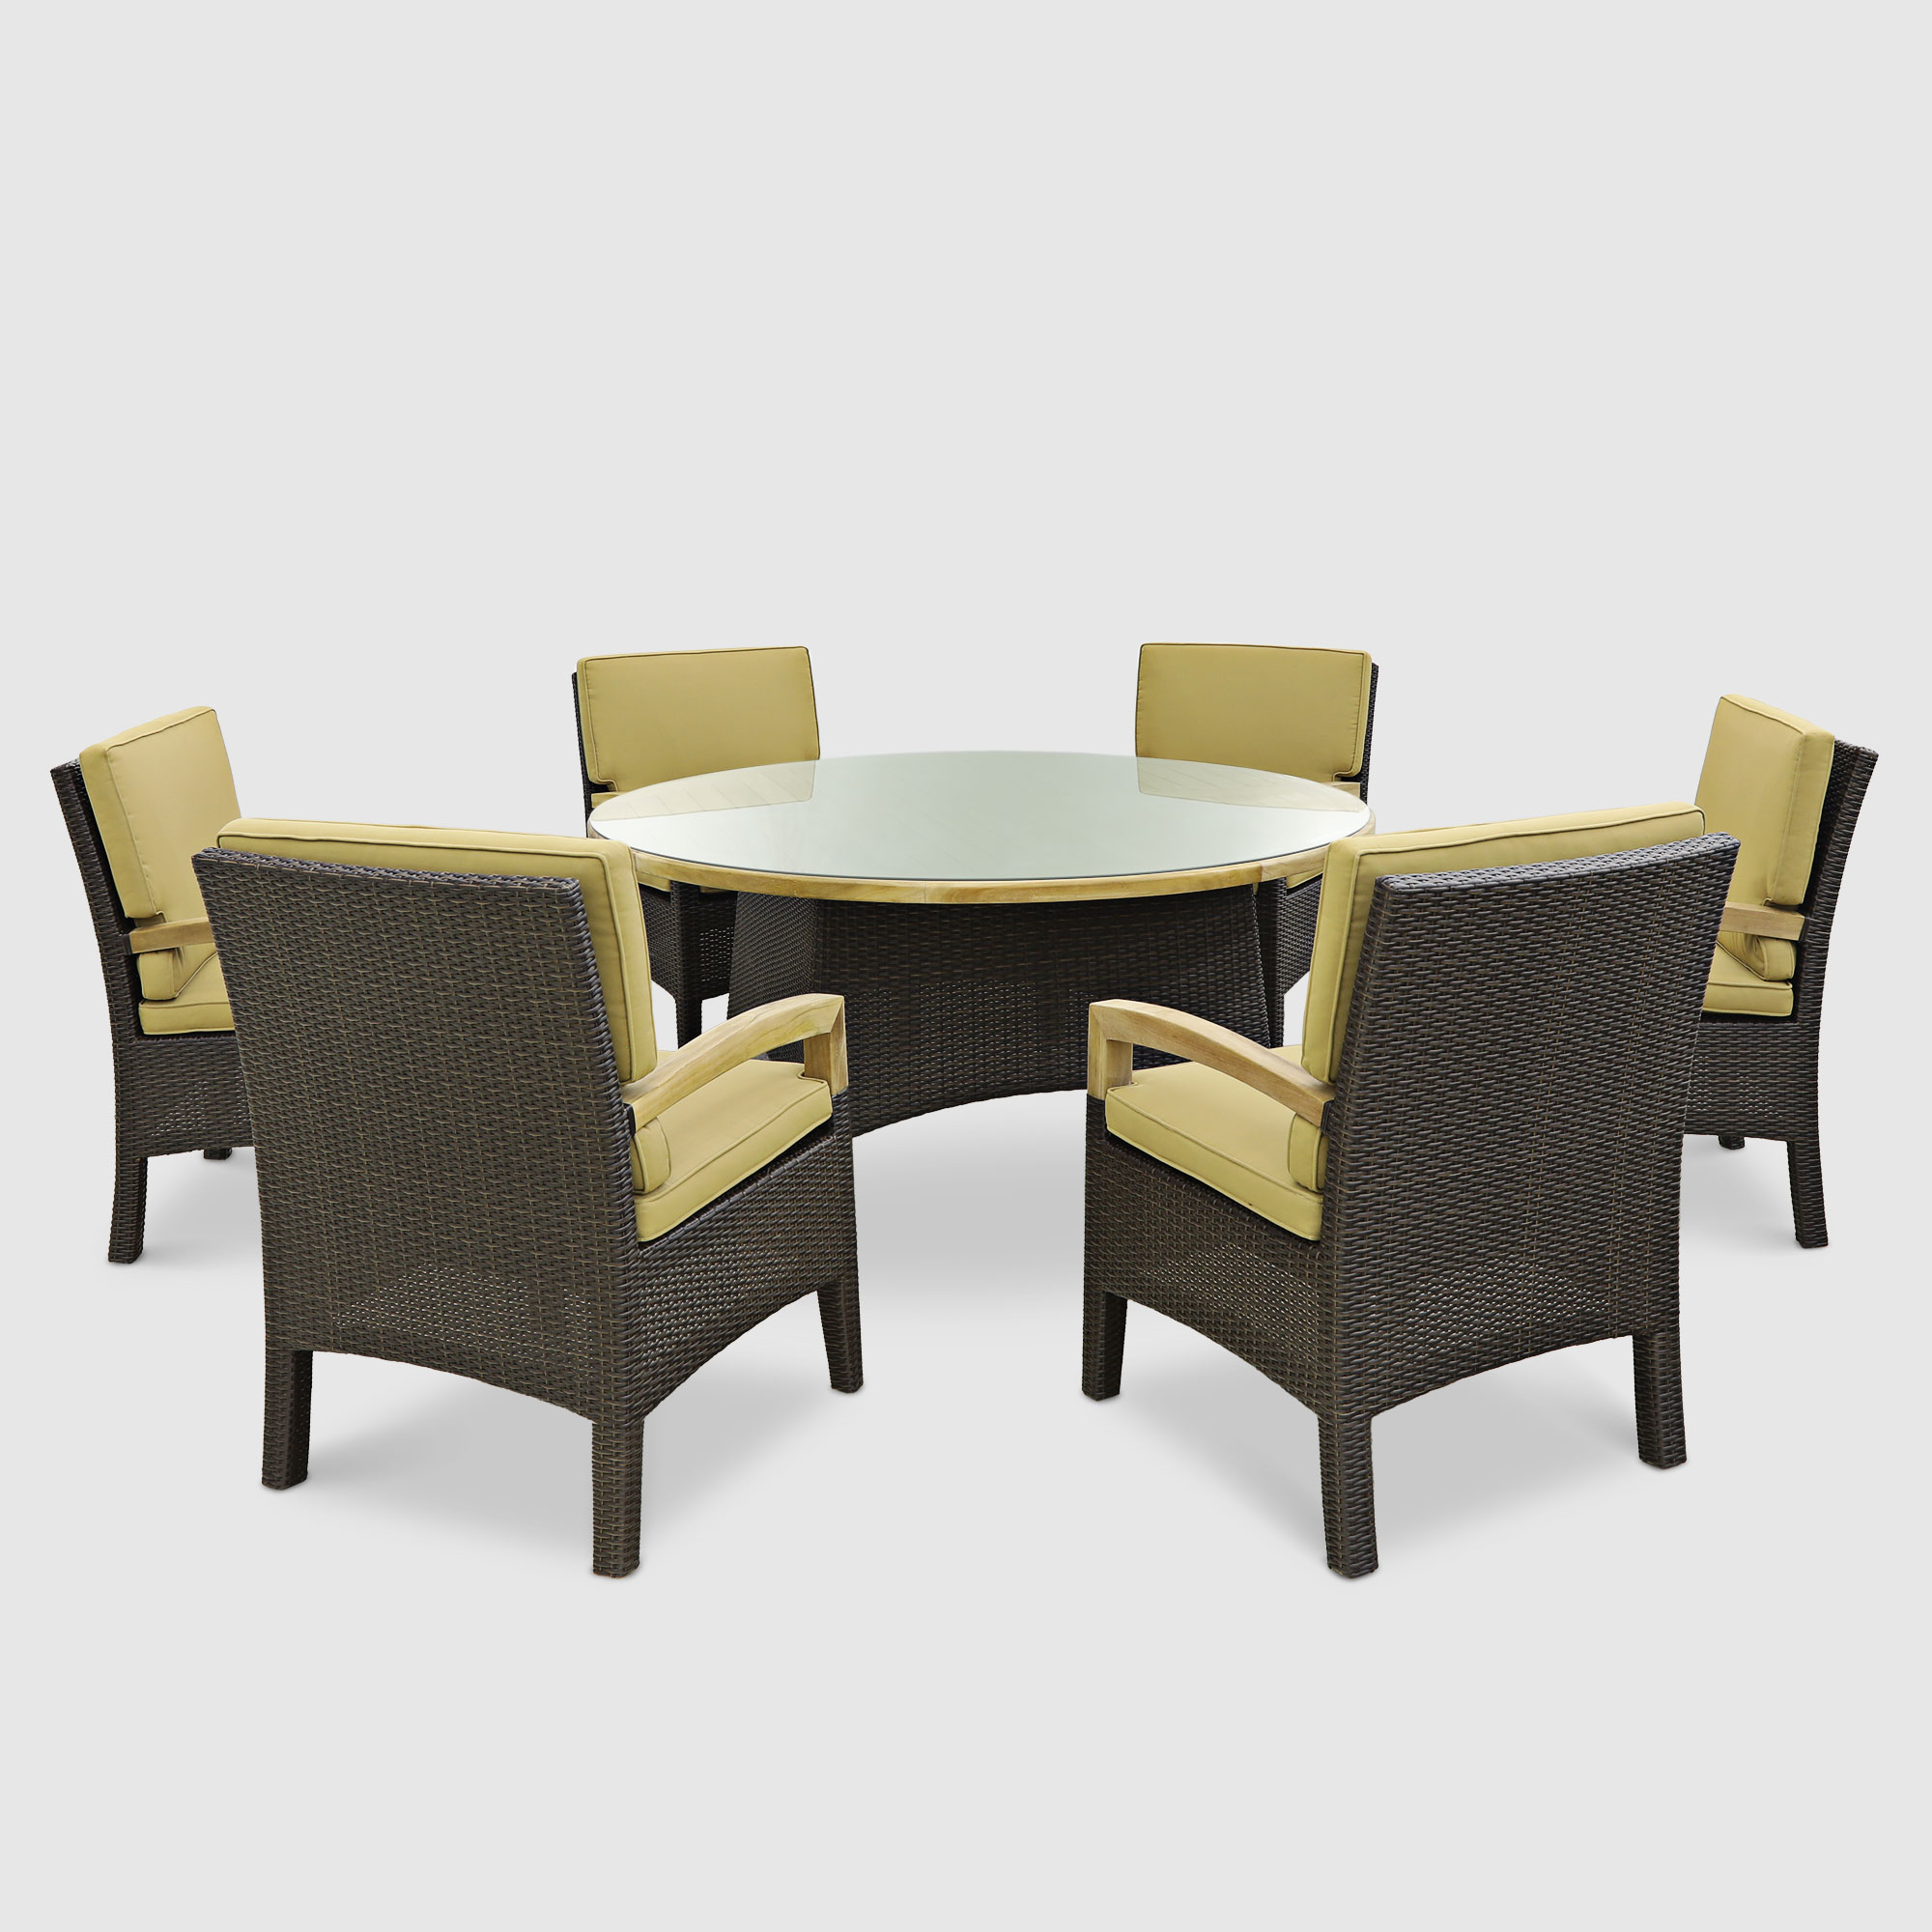 Комплект мебели Jepara Rehau 7 предметов комплект tetchair pelangi 02 15 стол со стеклом 4 кресла без подушек ротанг walnut грецкий орех